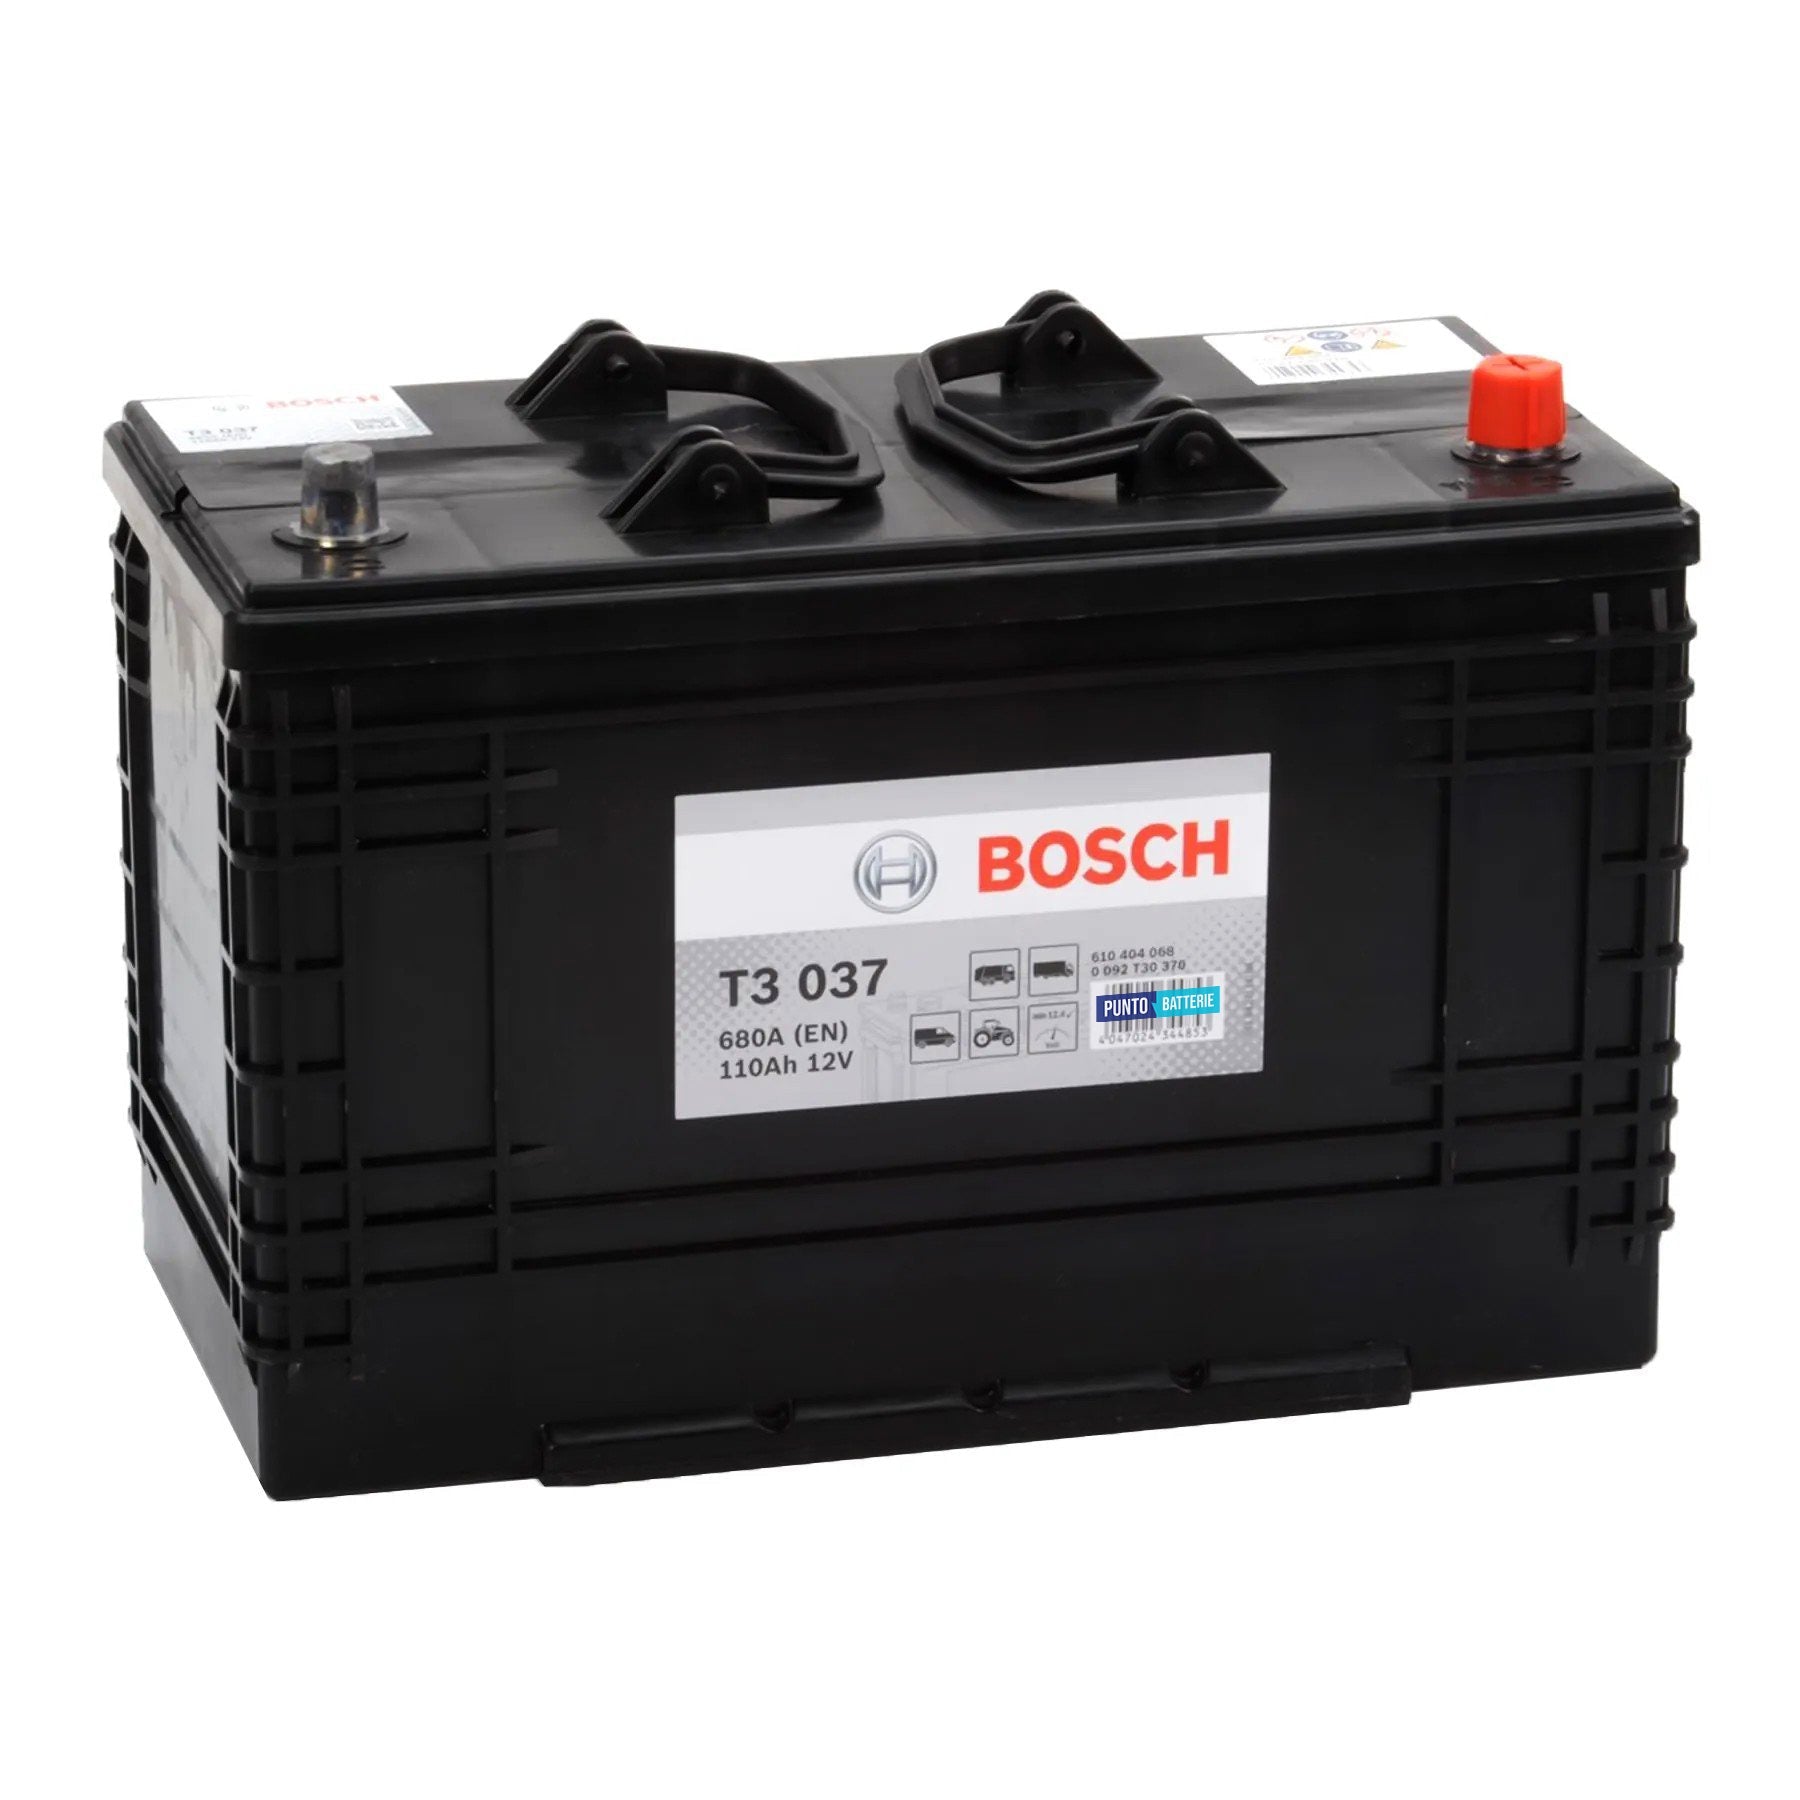 Batteria originale Bosch T3 T3037, dimensioni 346 x 173 x 236, polo positivo a destra, 12 volt, 110 amperora, 680 ampere. Batteria per camion e veicoli pesanti.